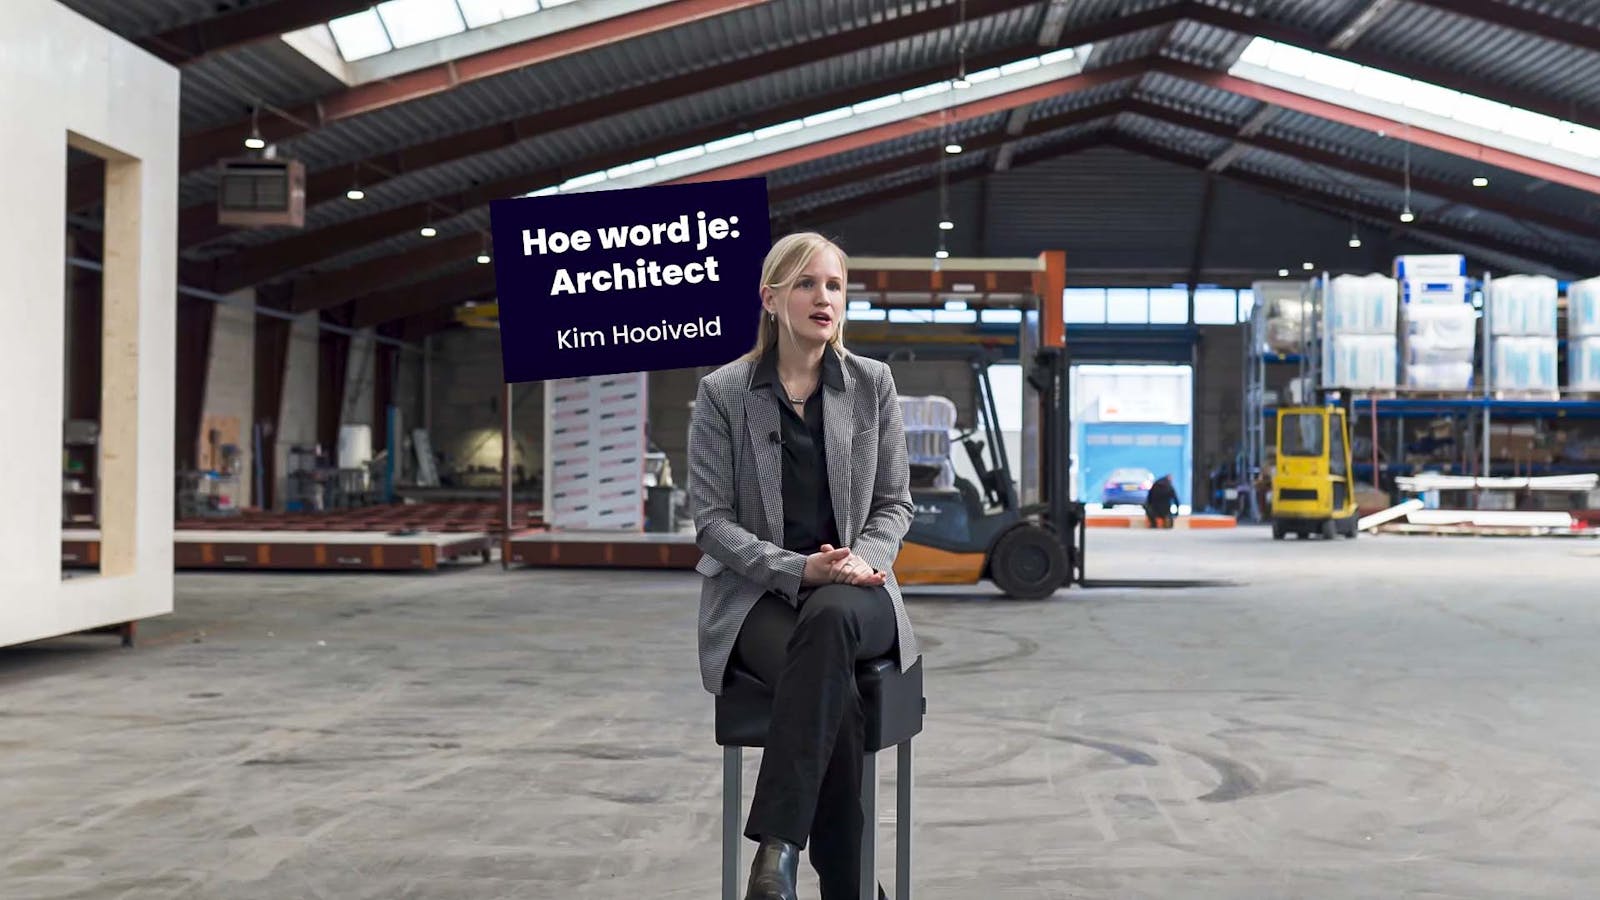 Hoe word je architect: Kim Hooiveld.